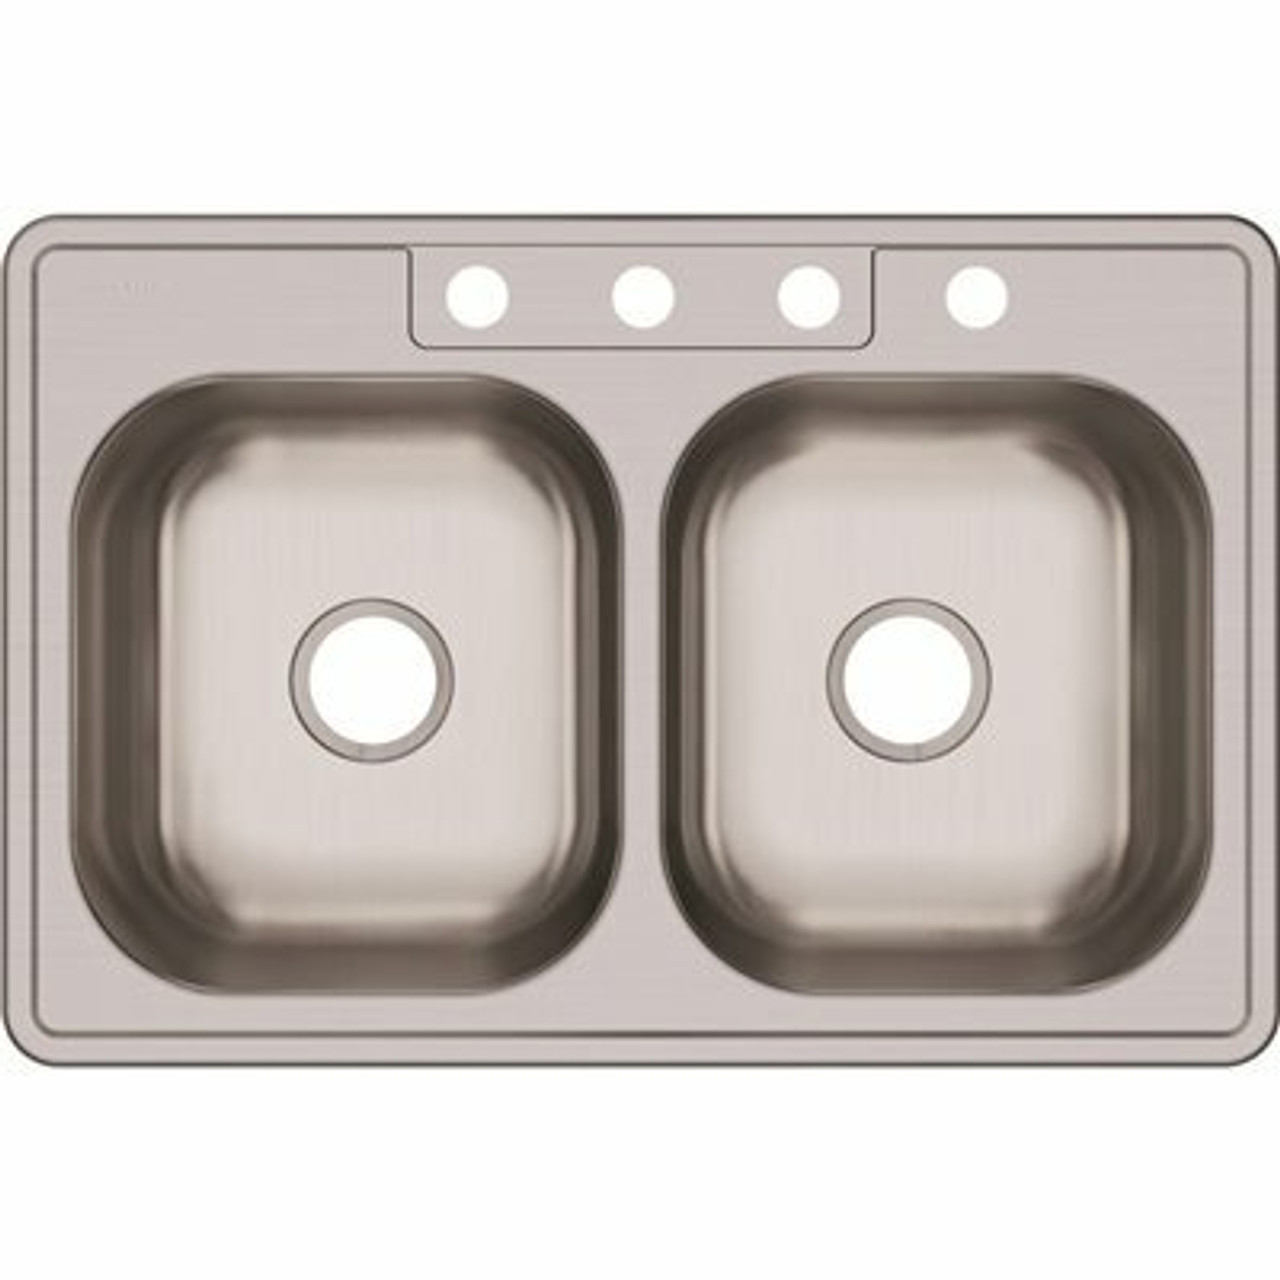 Elkay Dayton Drop-In Stainless Steel 33 In. 4-Hole 50/50 Double Bowl Kitchen Sink - 302002